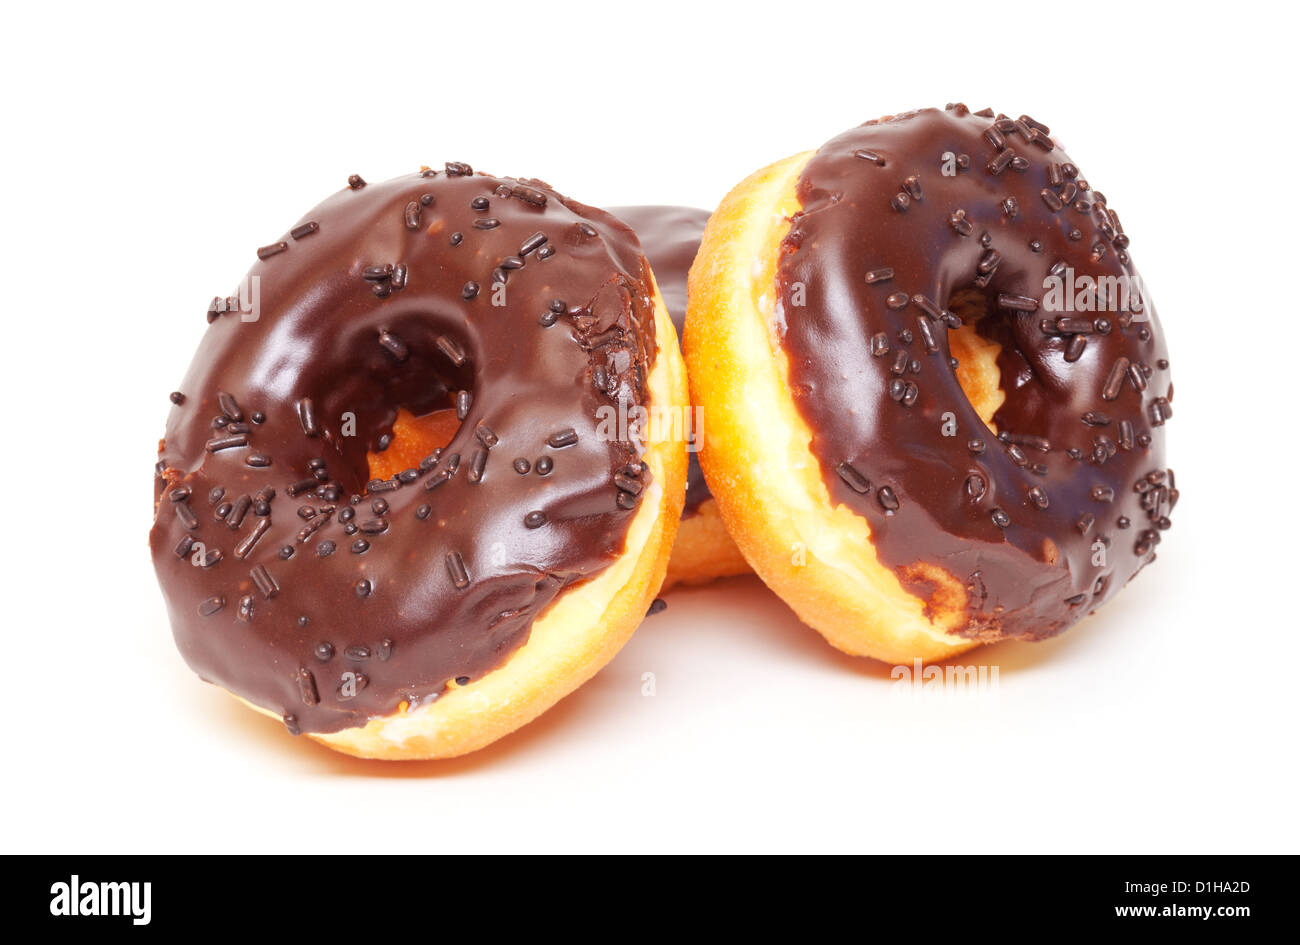 Schokoladen Donuts gestapelt auf weißem Hintergrund Stockfoto